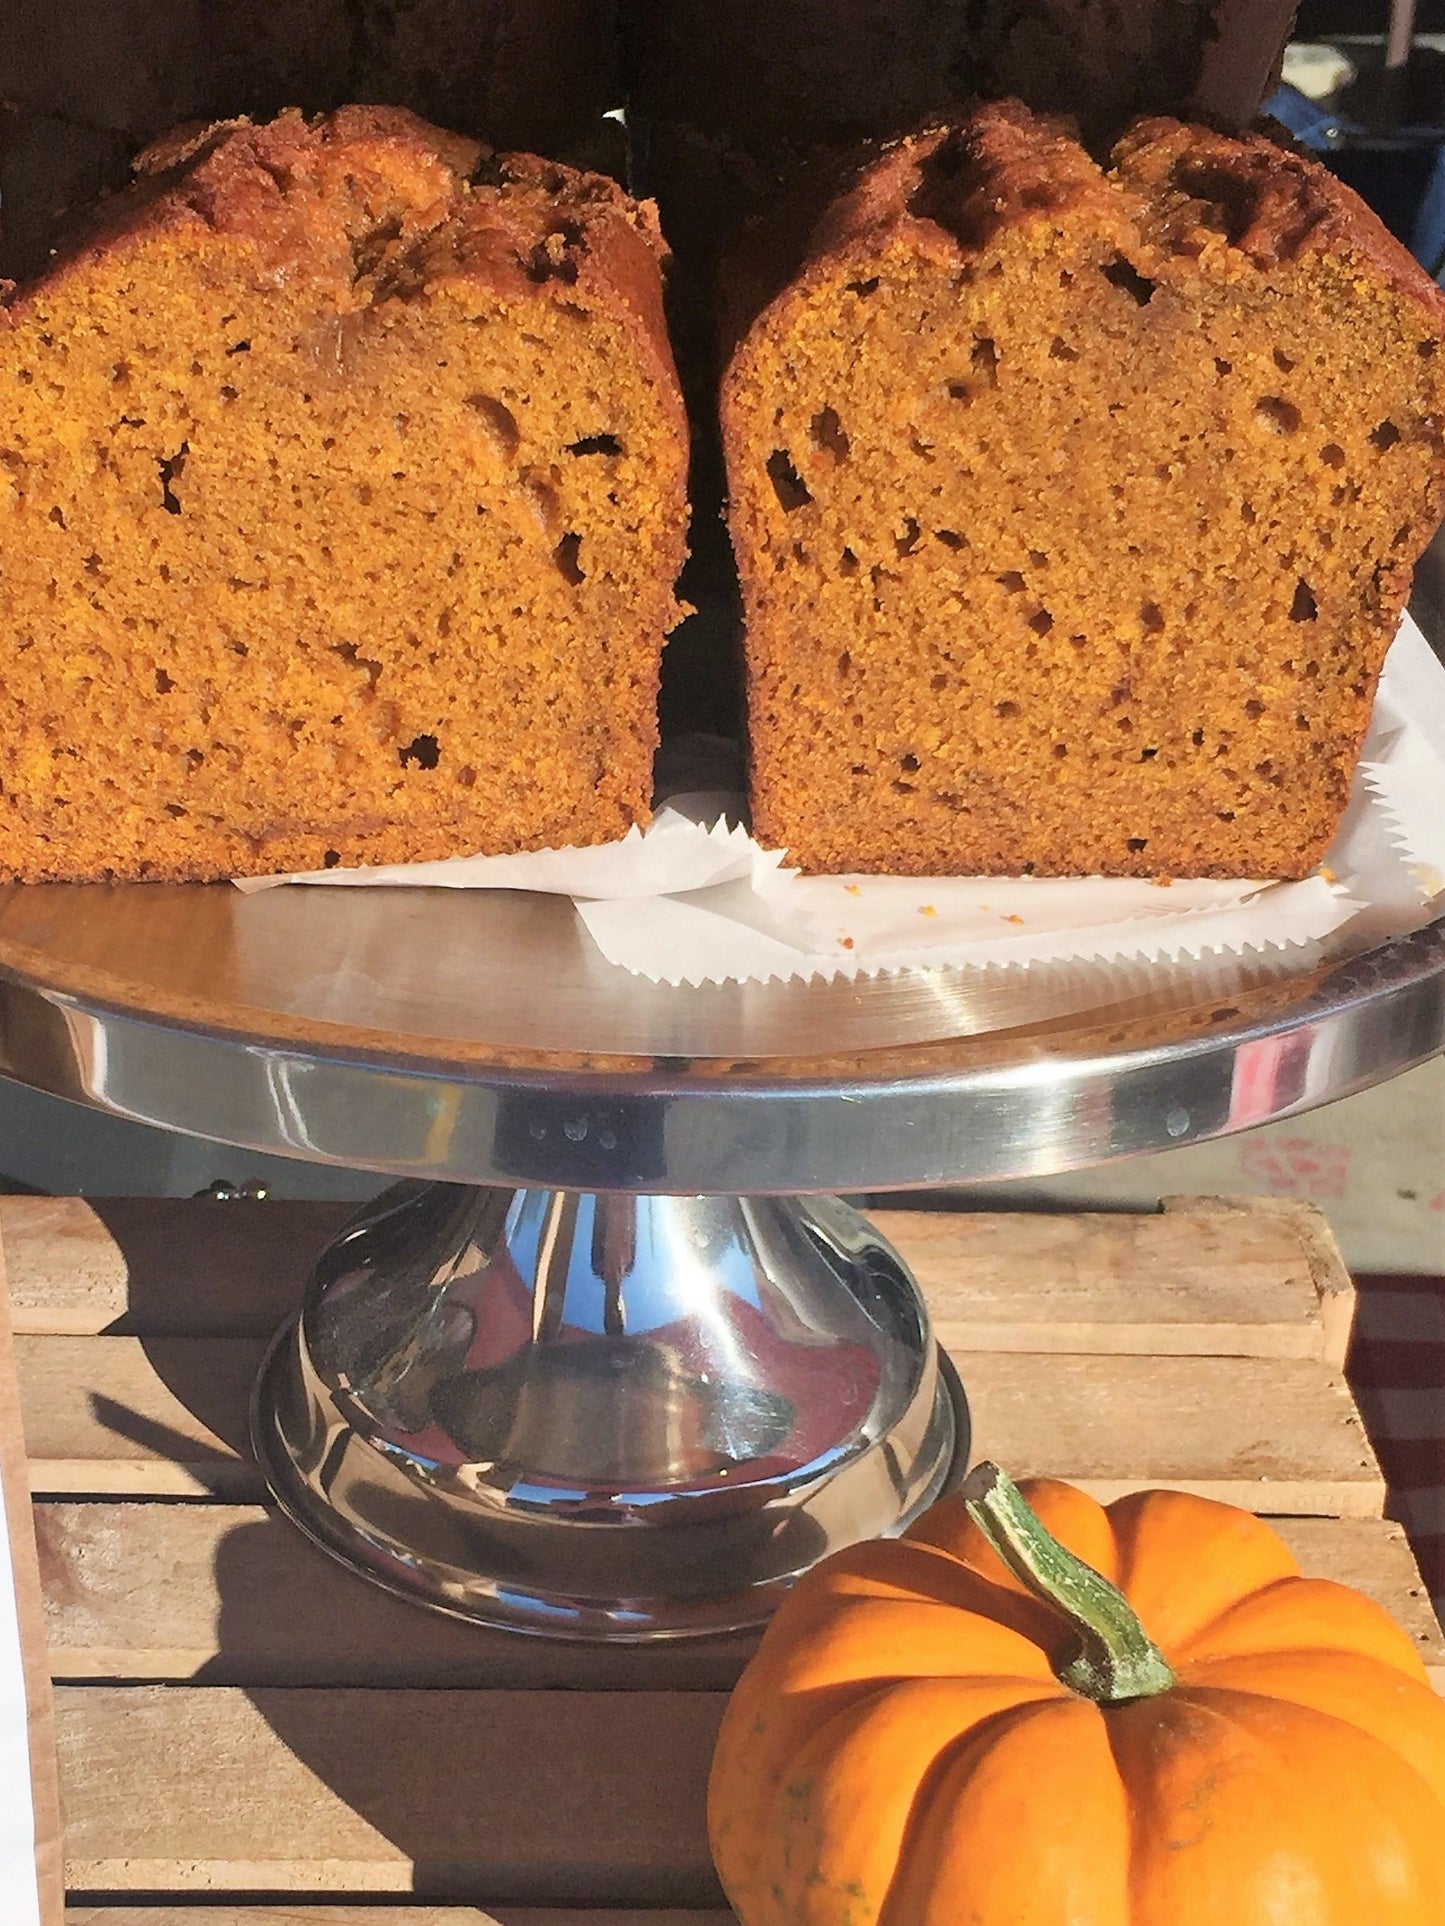 11/22 Thanksgiving Bake - Mini Loaf Pumpkin Bread (Plain, Raisin, or Chocolate Chip)